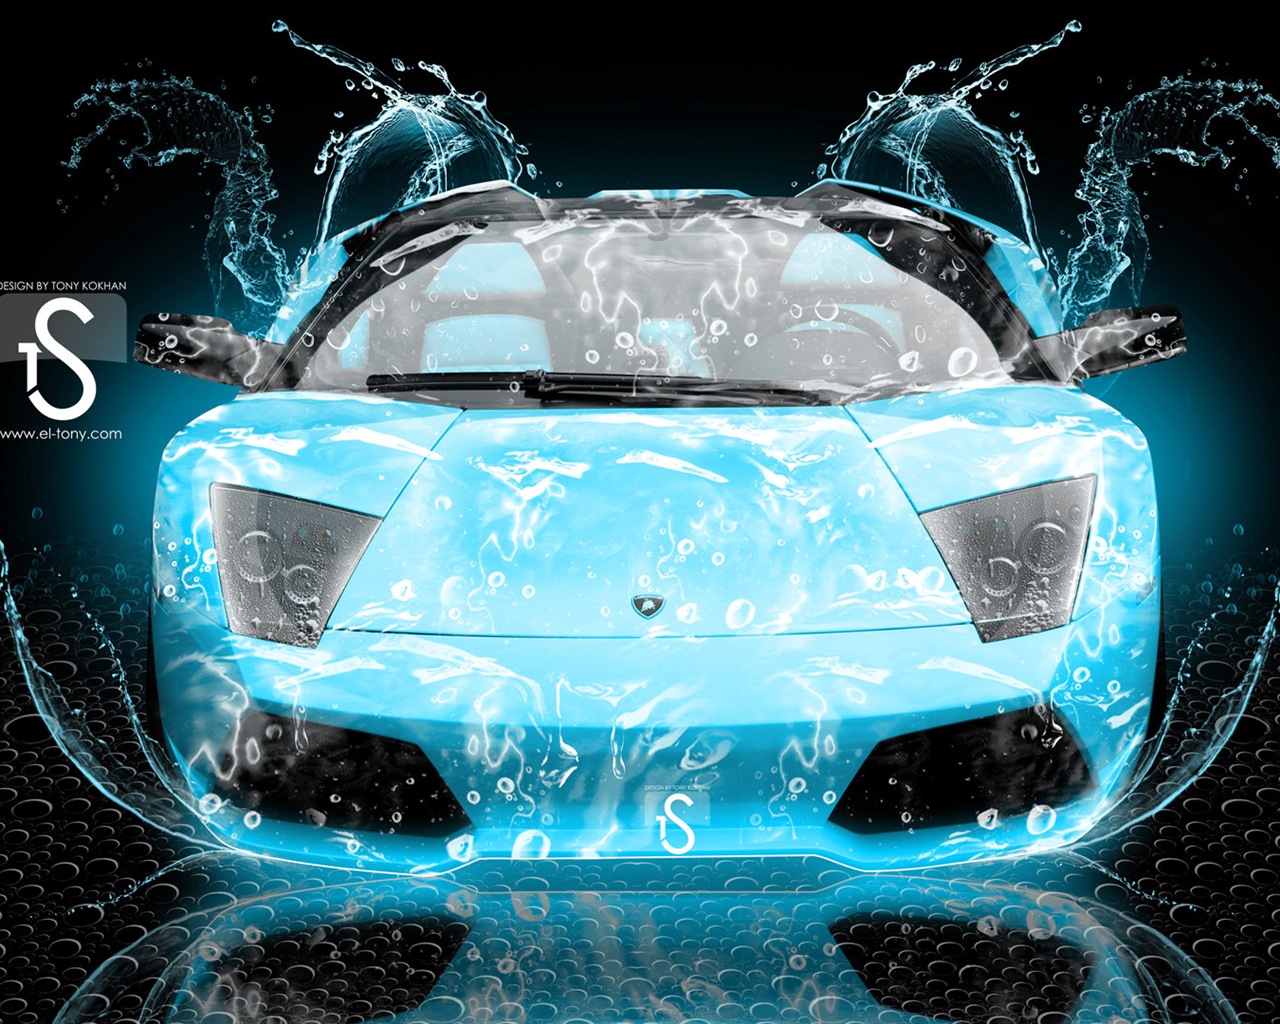 Wassertropfen spritzen, schönes Auto kreative Design Tapeten #16 - 1280x1024